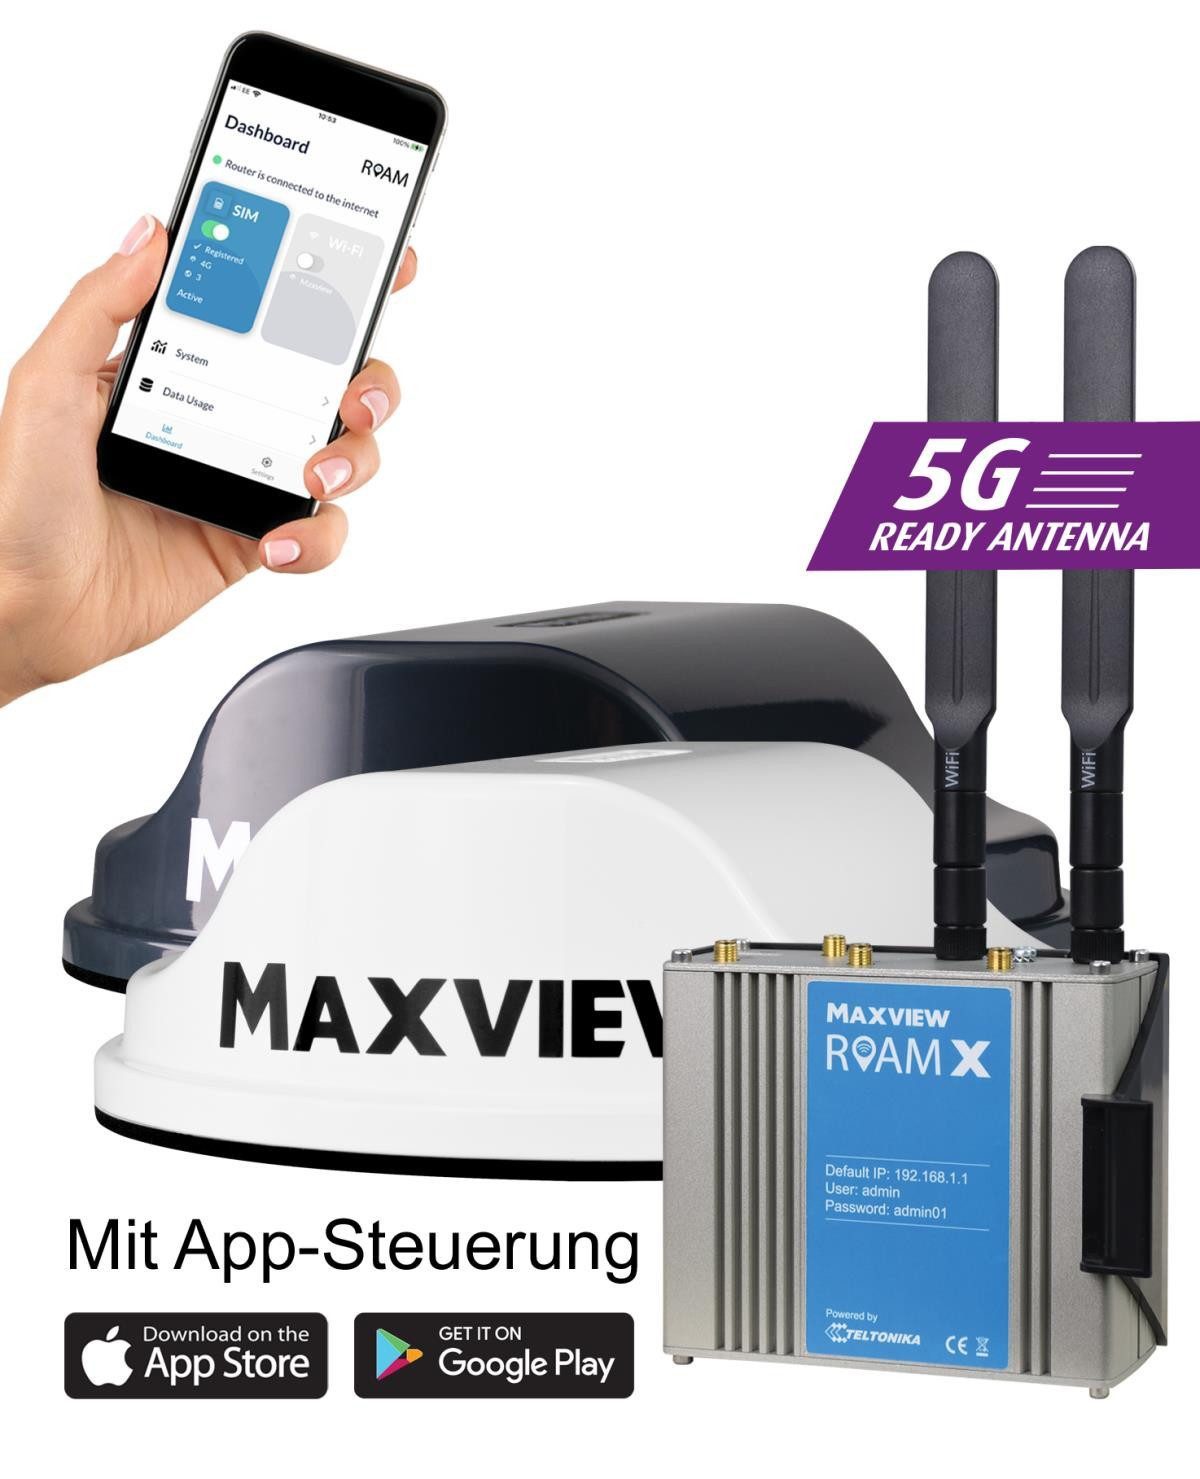 Maxview Roam X mobile 5G ready / WiFi-Antenne schwarz inkl. Router Mobilfunkantenne